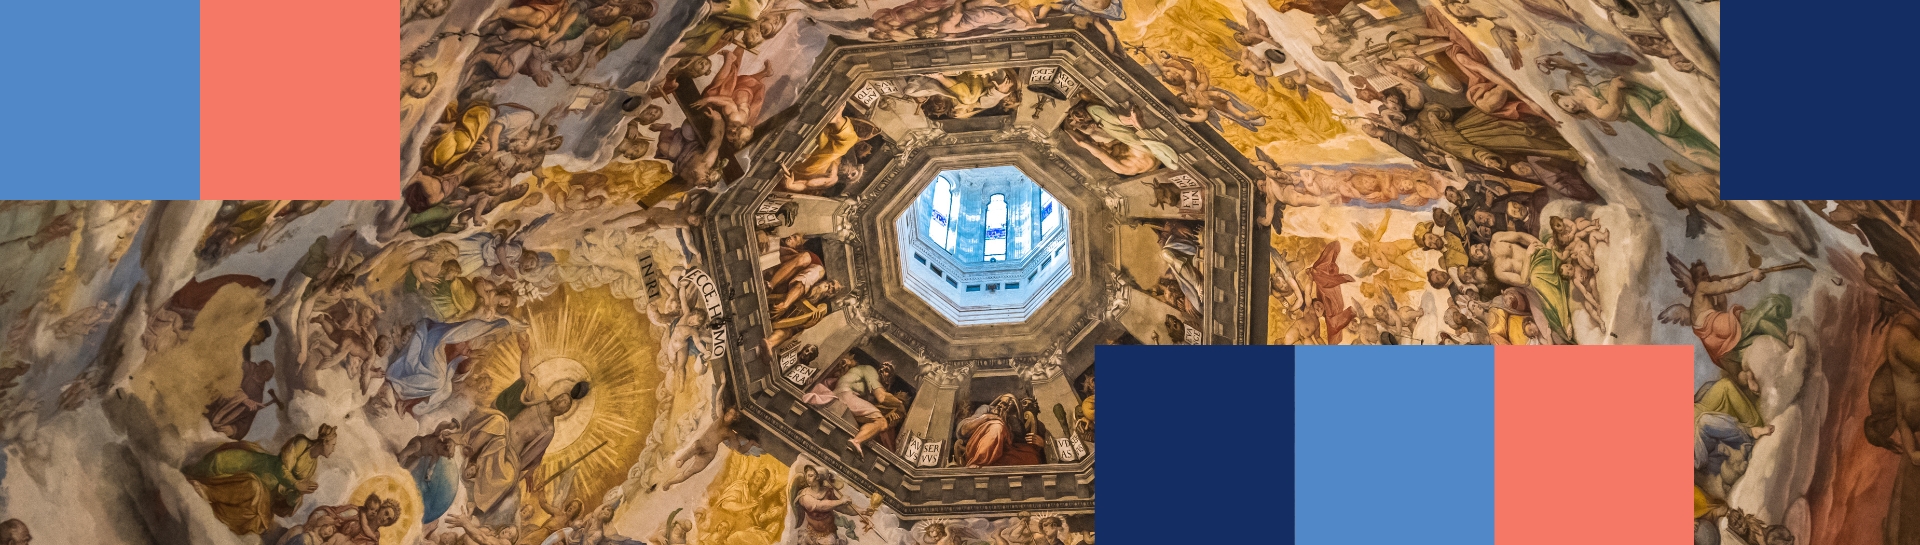 Frescos en la cúpula de la catedral de Florencia.